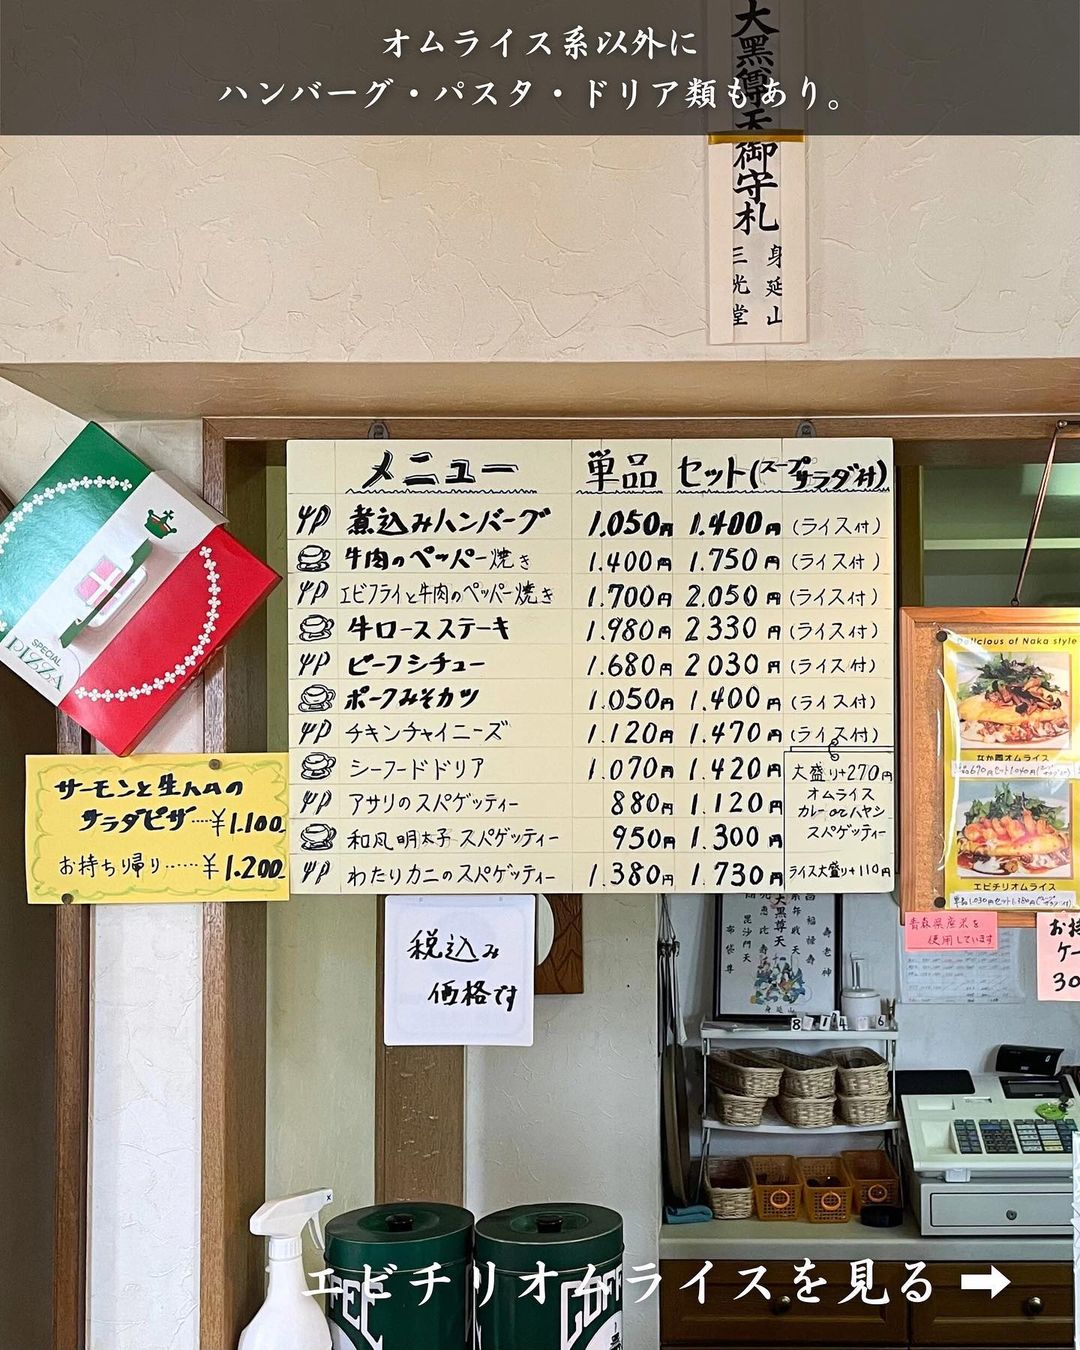 【青森市・キッチン・カフェ なか】メニュー